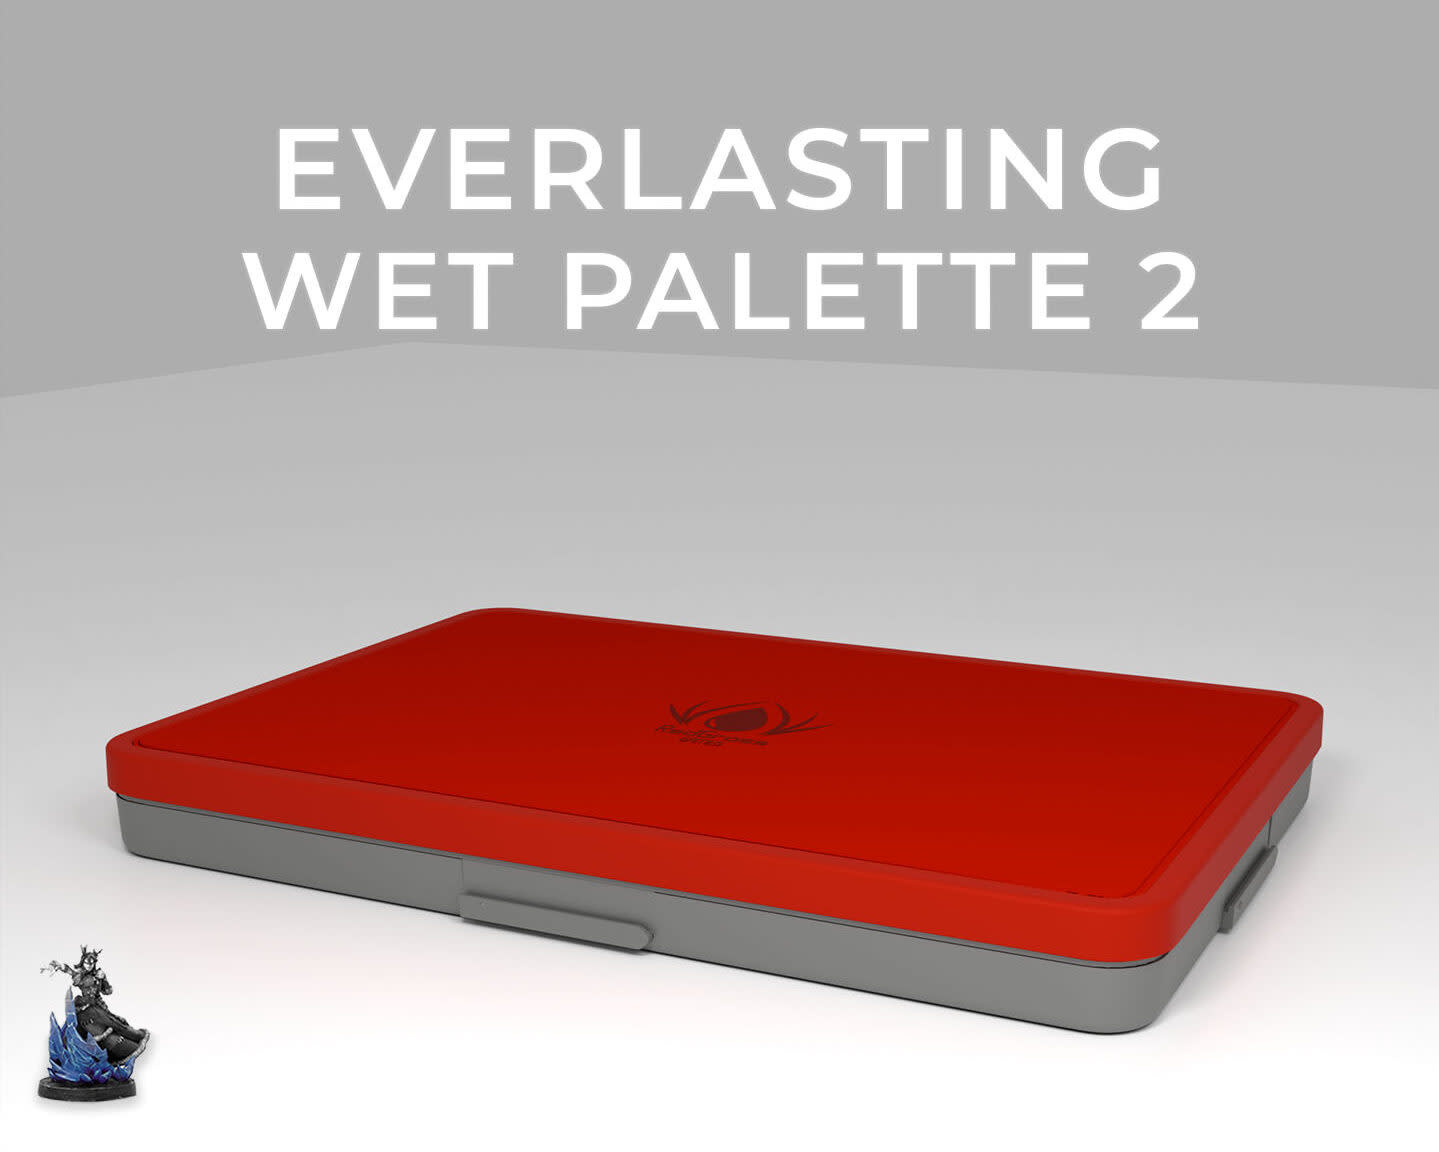 Everlasting wet palette Painter V2